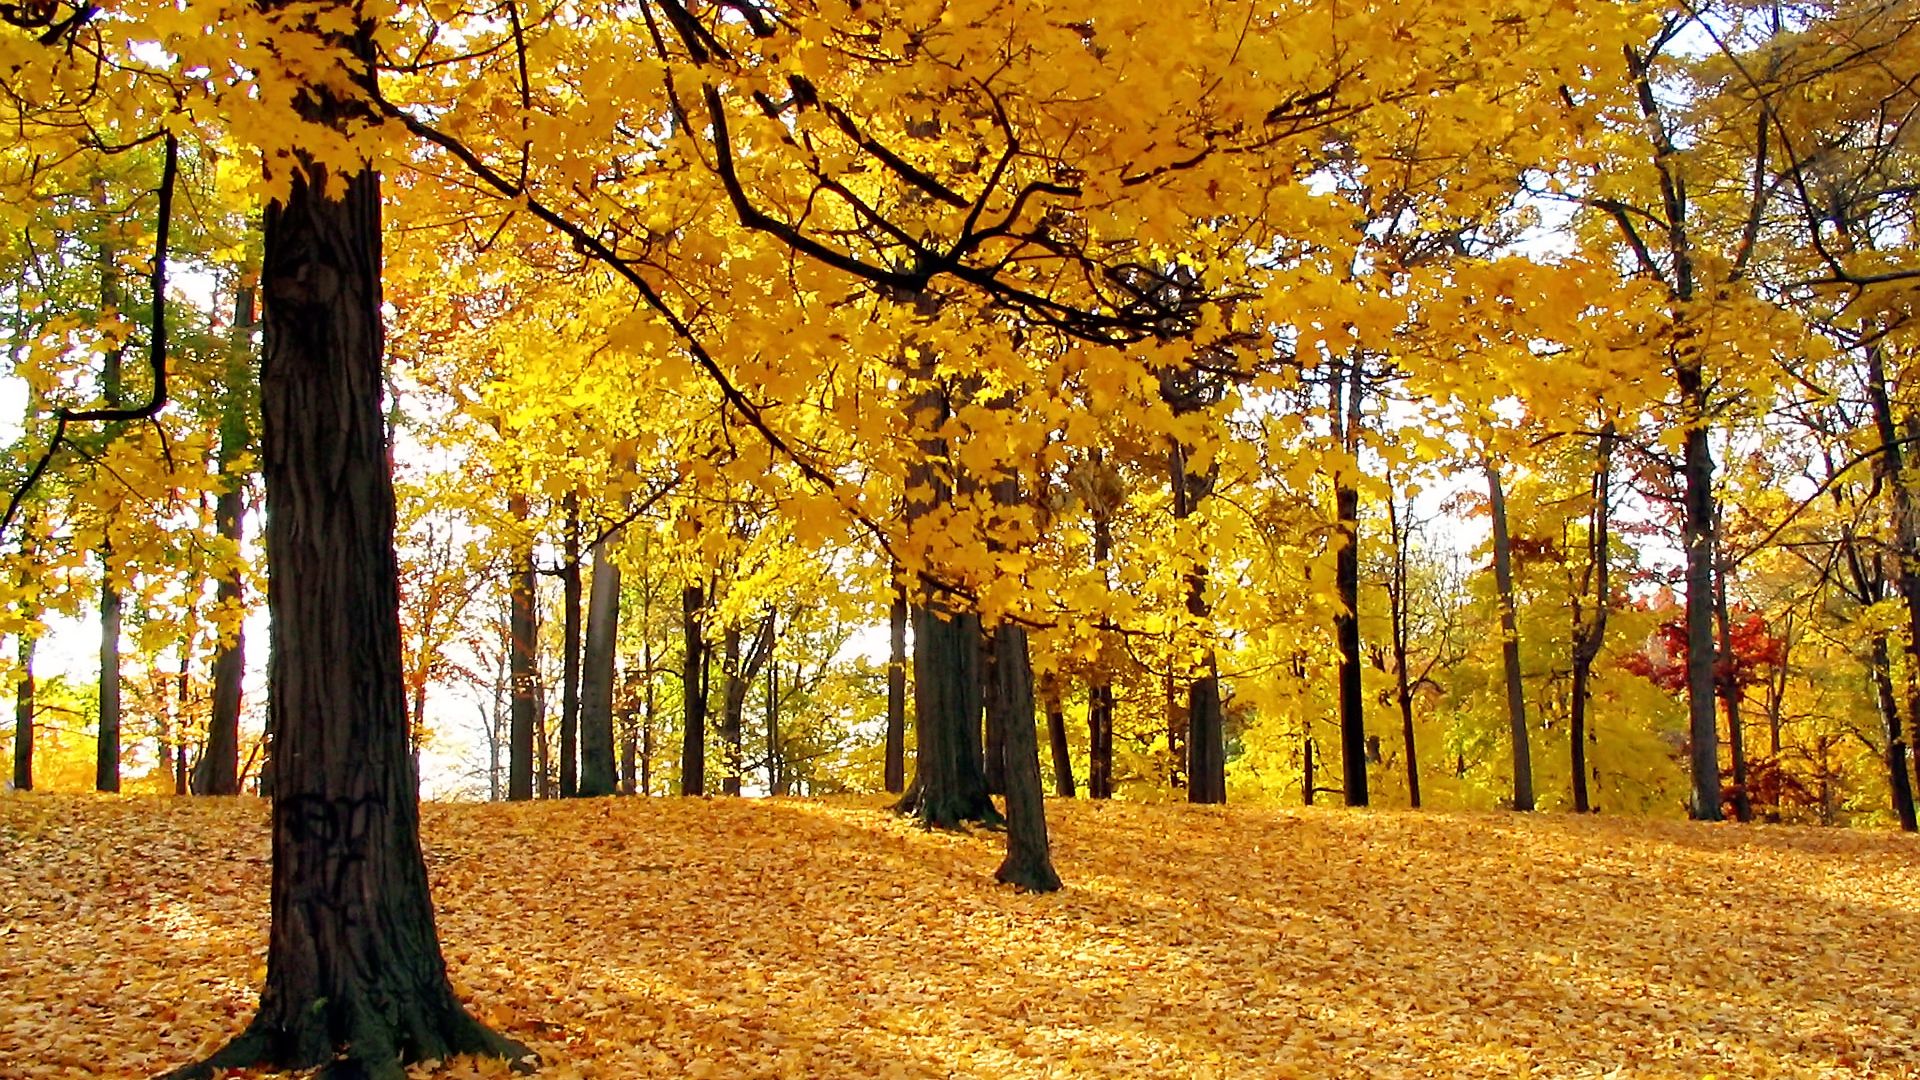 Nature  Abstract - HDTV-Autumn_Trees_1920x1080 HDTV 1080p.jpg